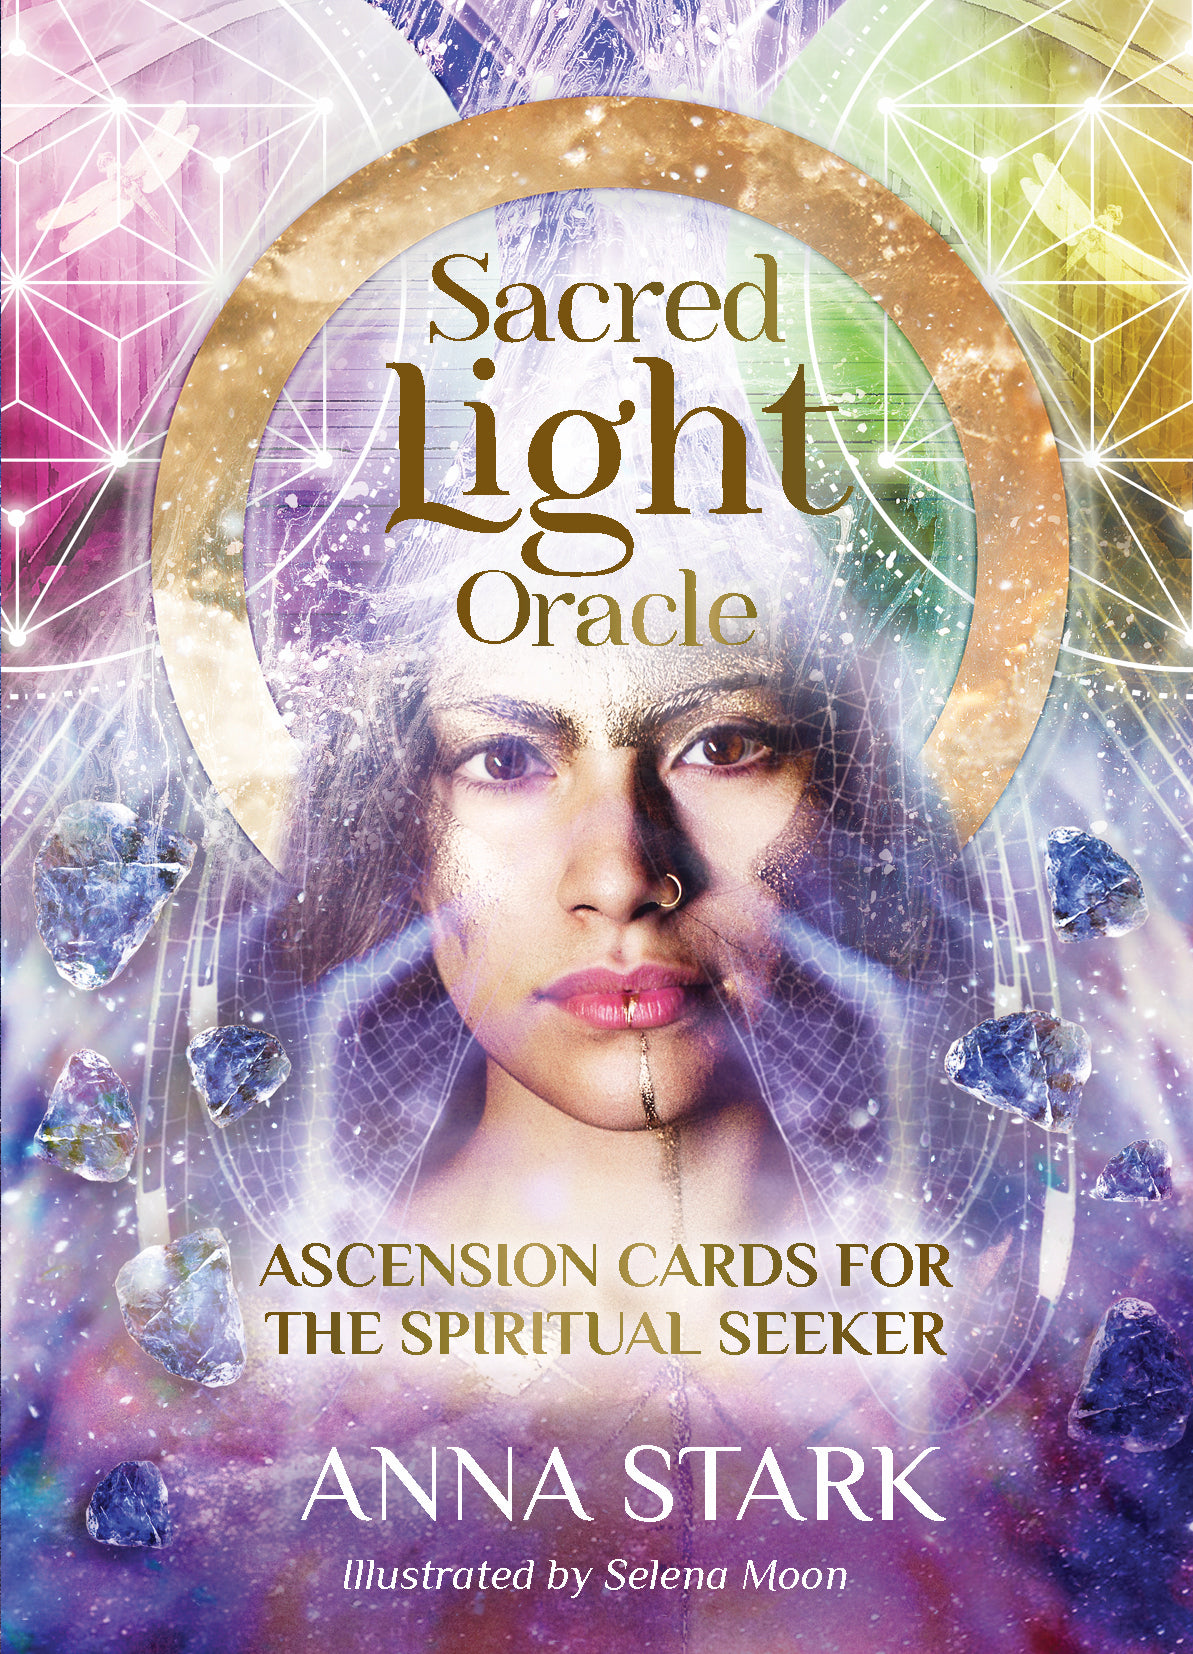 Sacred Light Oracle || Anna Stark